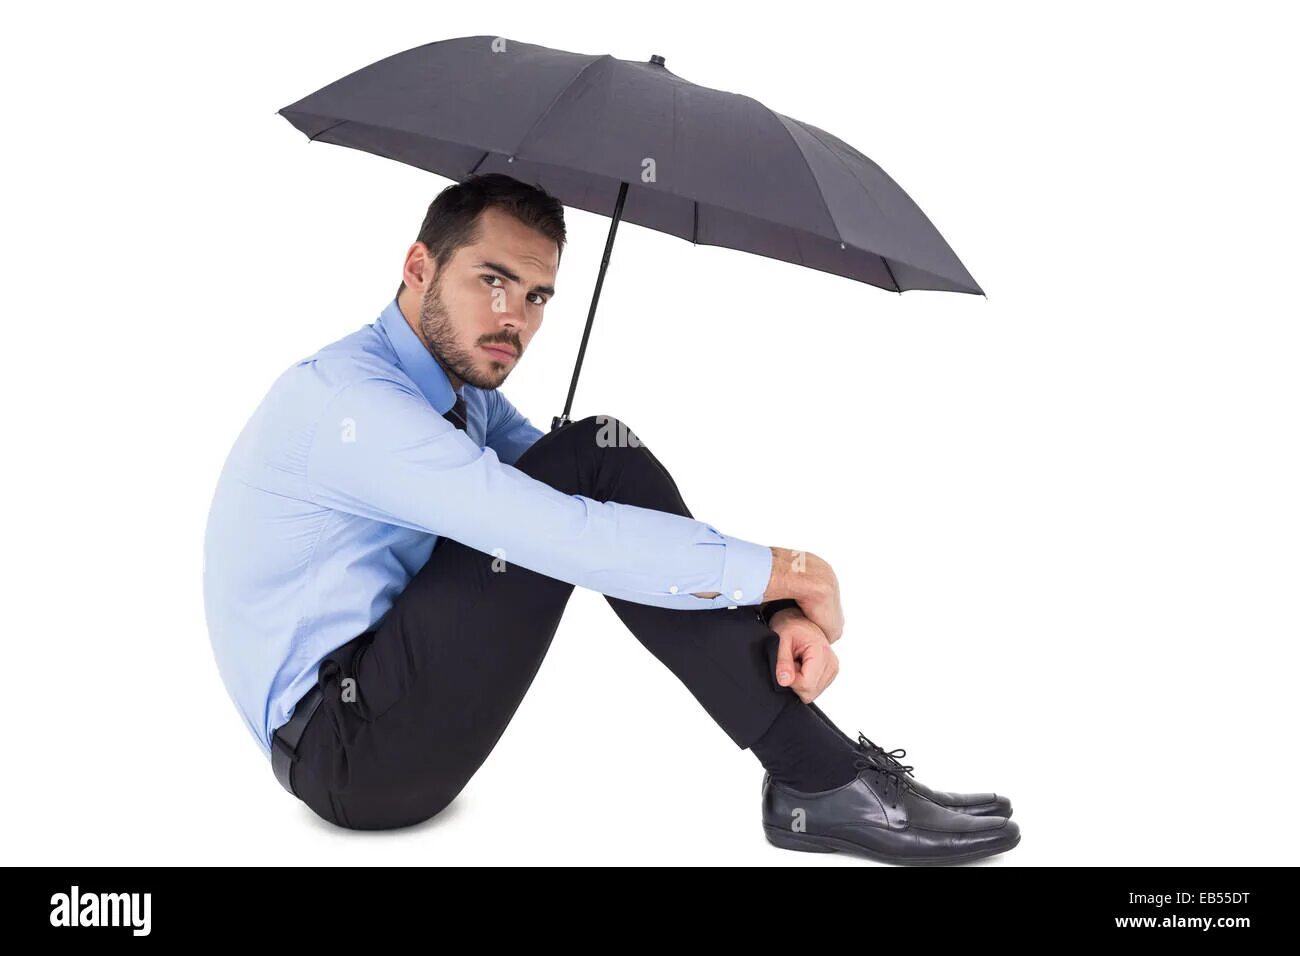 Зонтик сидит. Человек с зонтиком сидит. Человек сидит с зонтом. Парень с зонтиком сидит. Человек сидит под зонтиком.